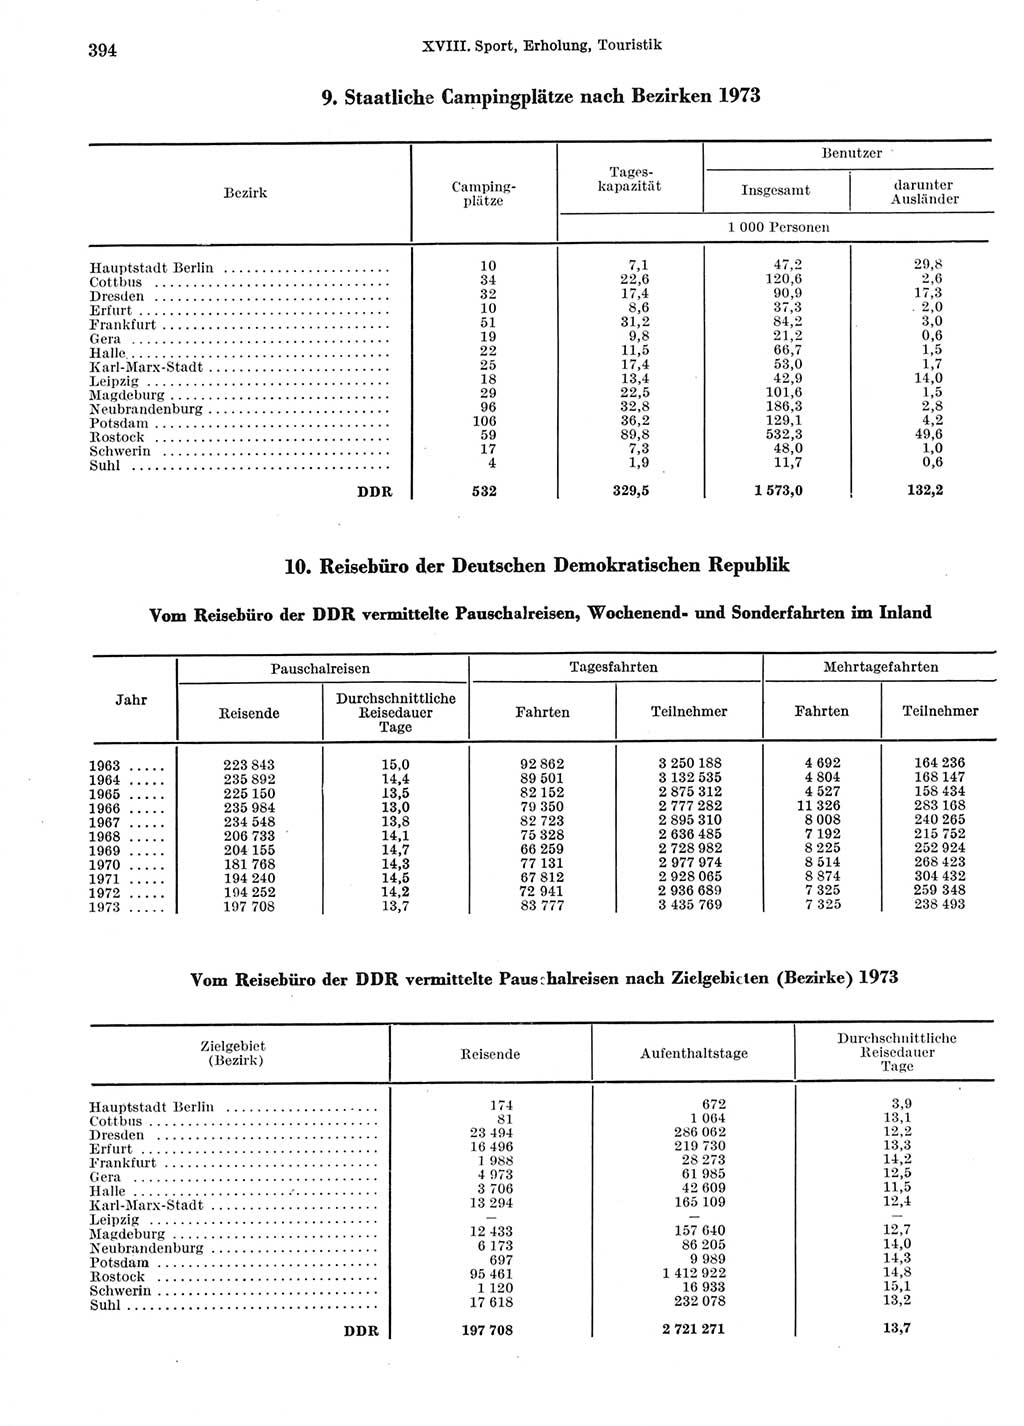 Statistisches Jahrbuch der Deutschen Demokratischen Republik (DDR) 1974, Seite 394 (Stat. Jb. DDR 1974, S. 394)